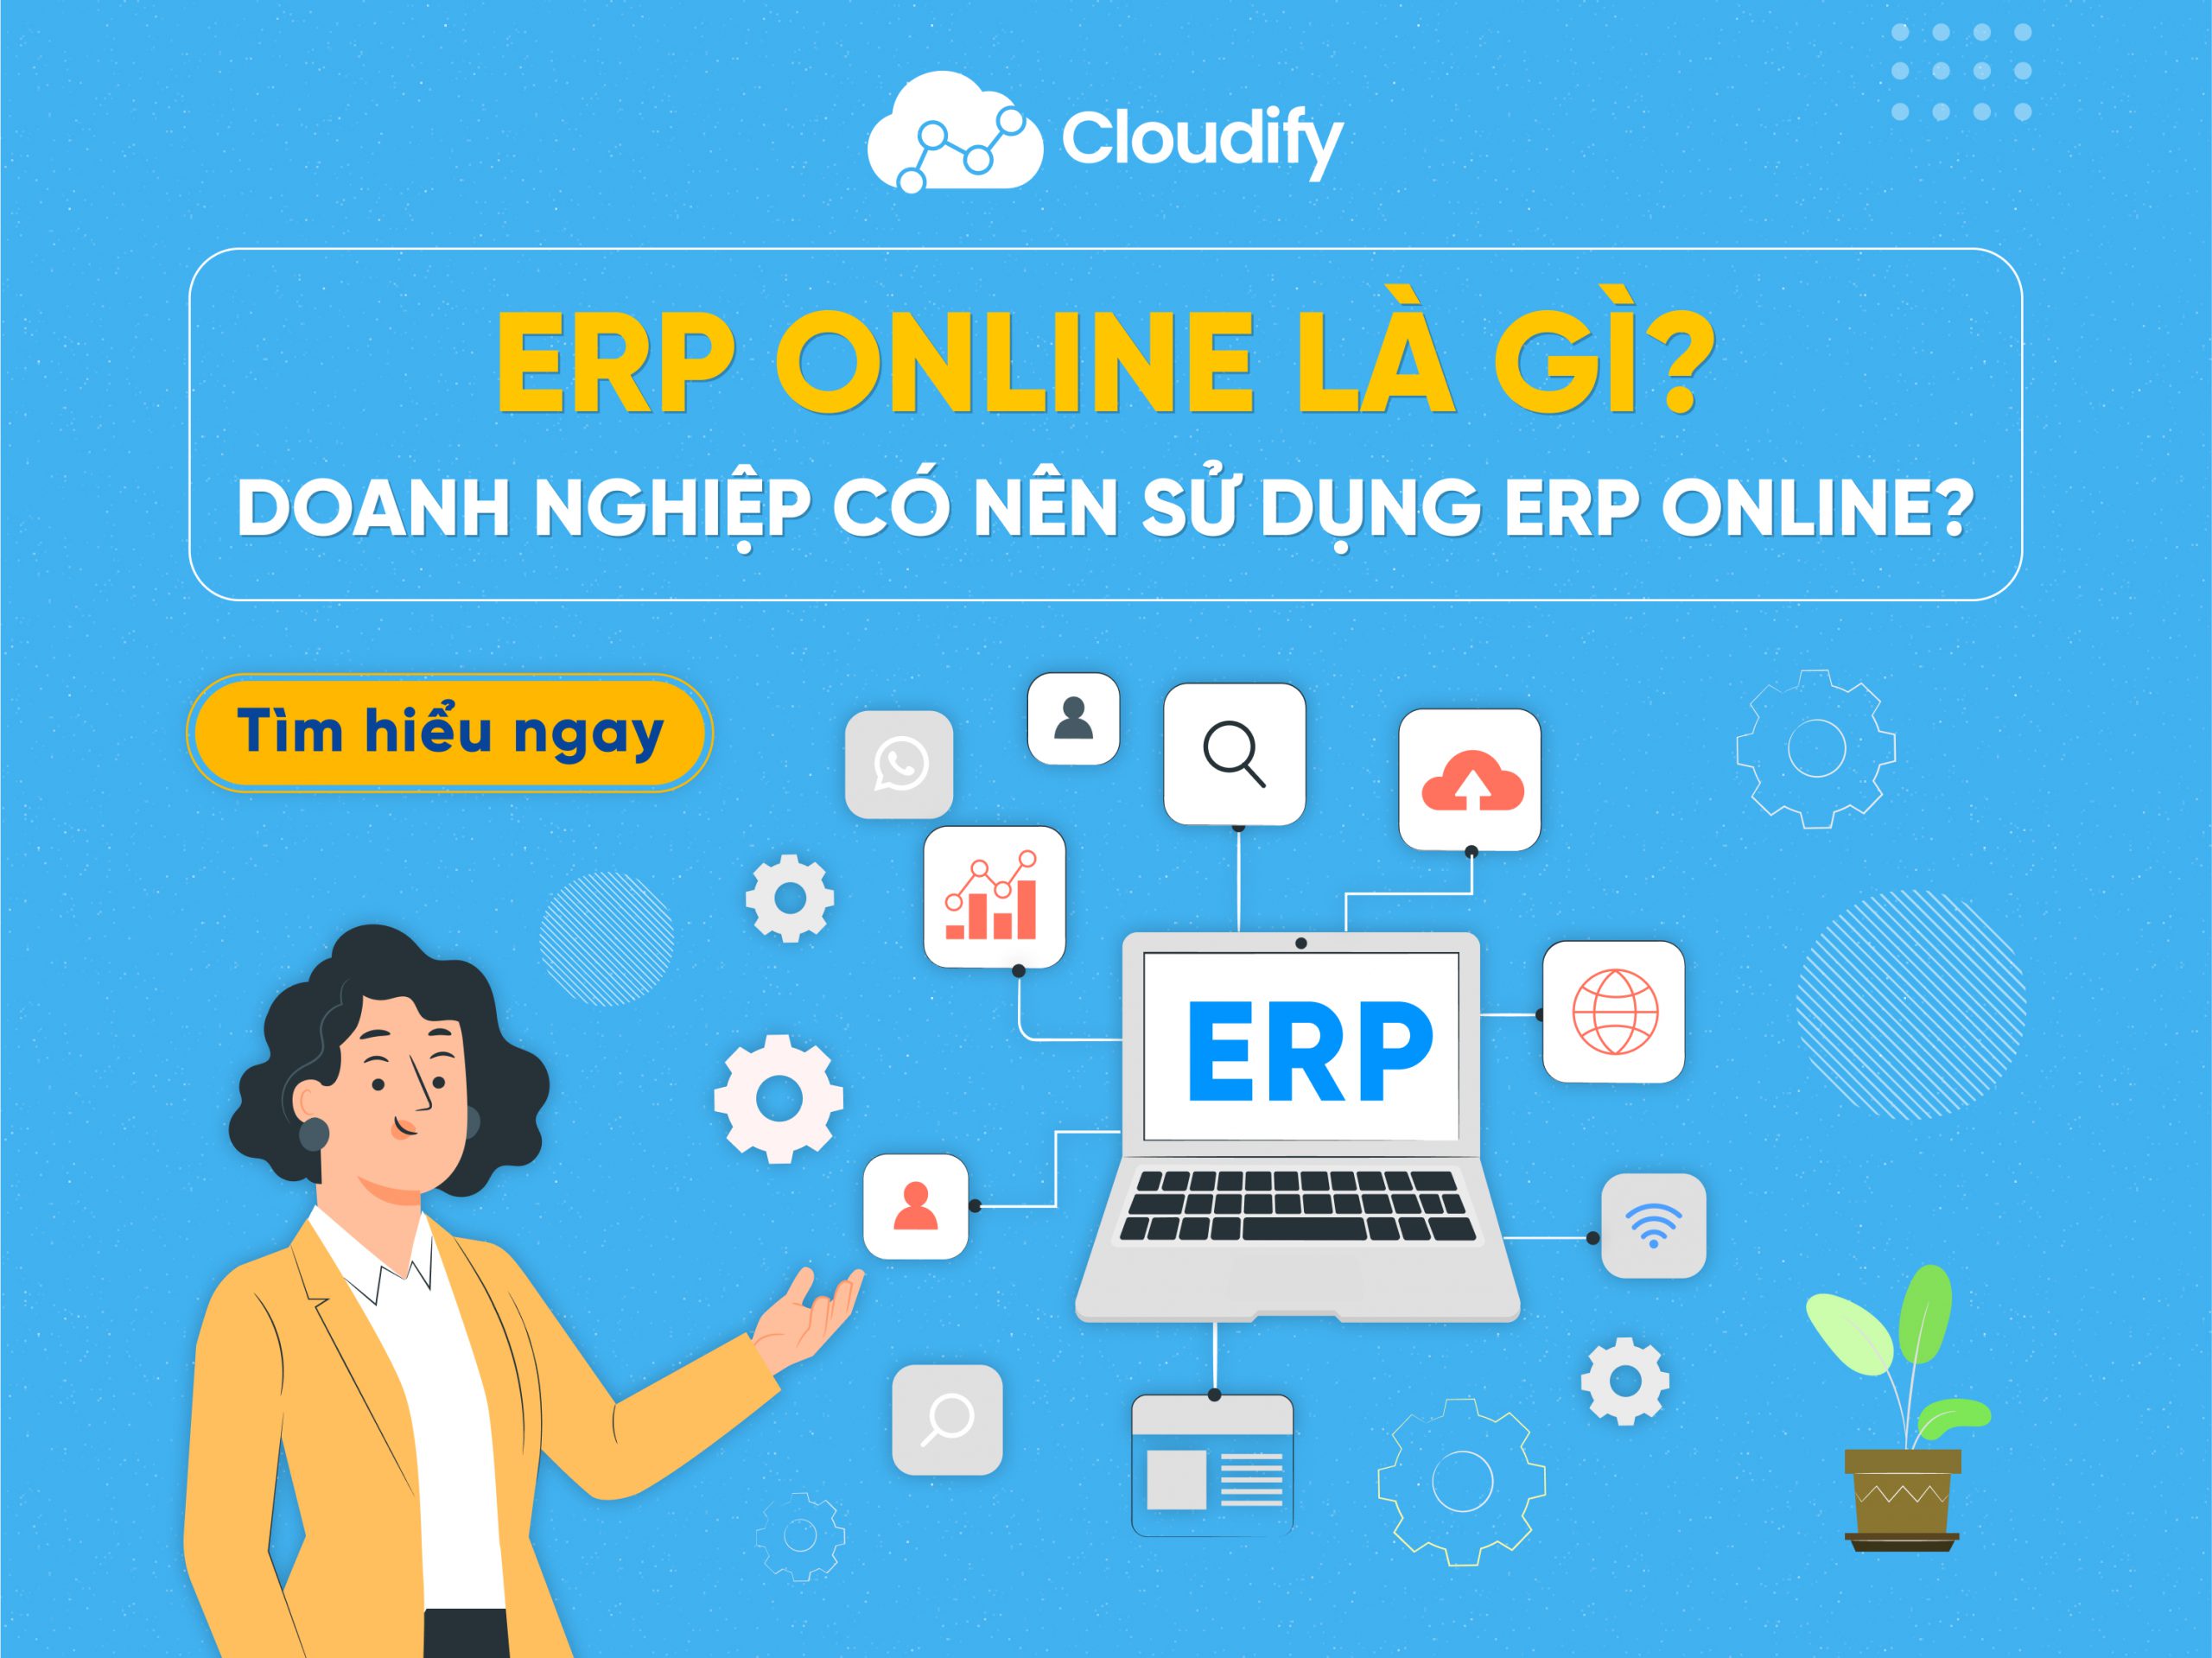 ERP online là gì? doanh nghiệp có nên sử dụng